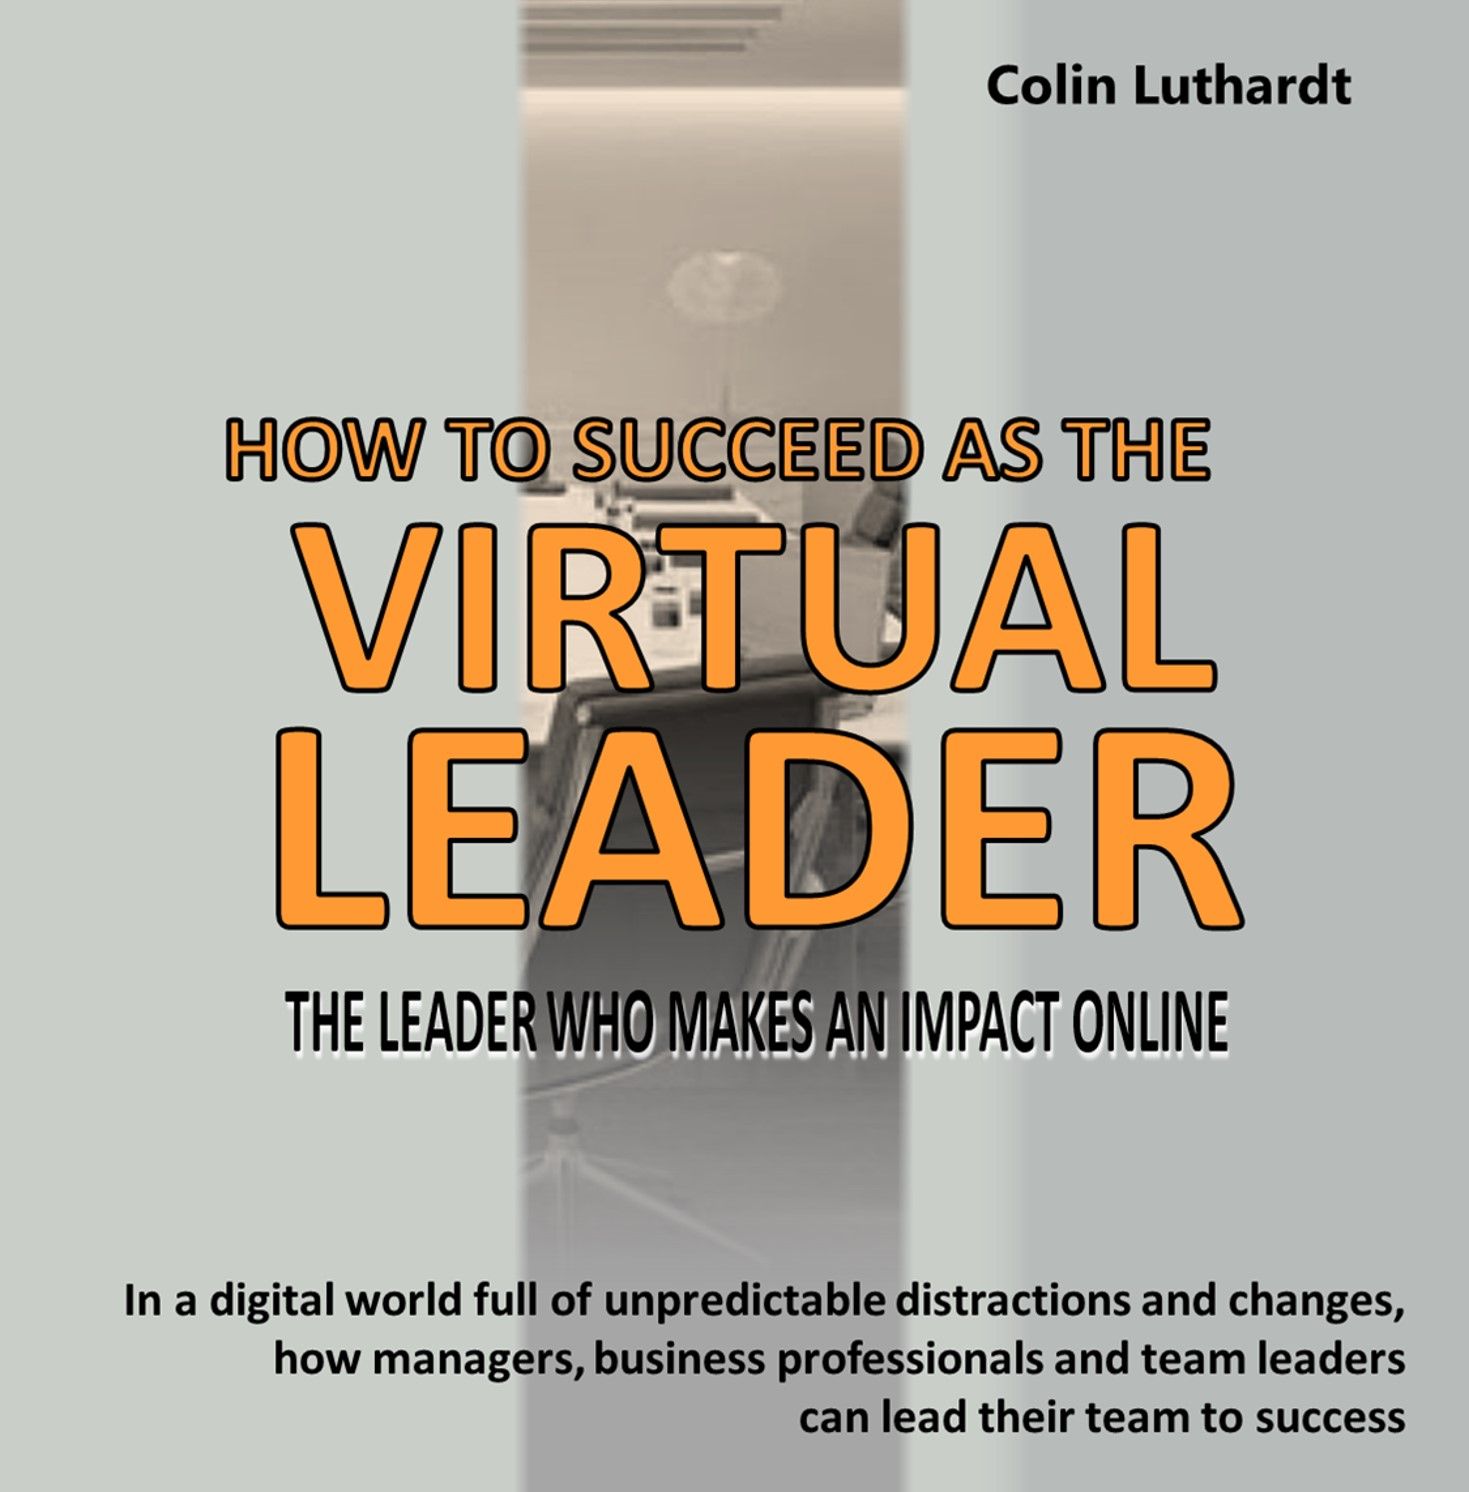 The Virtual Leader, ljudbok av Colin Luthardt